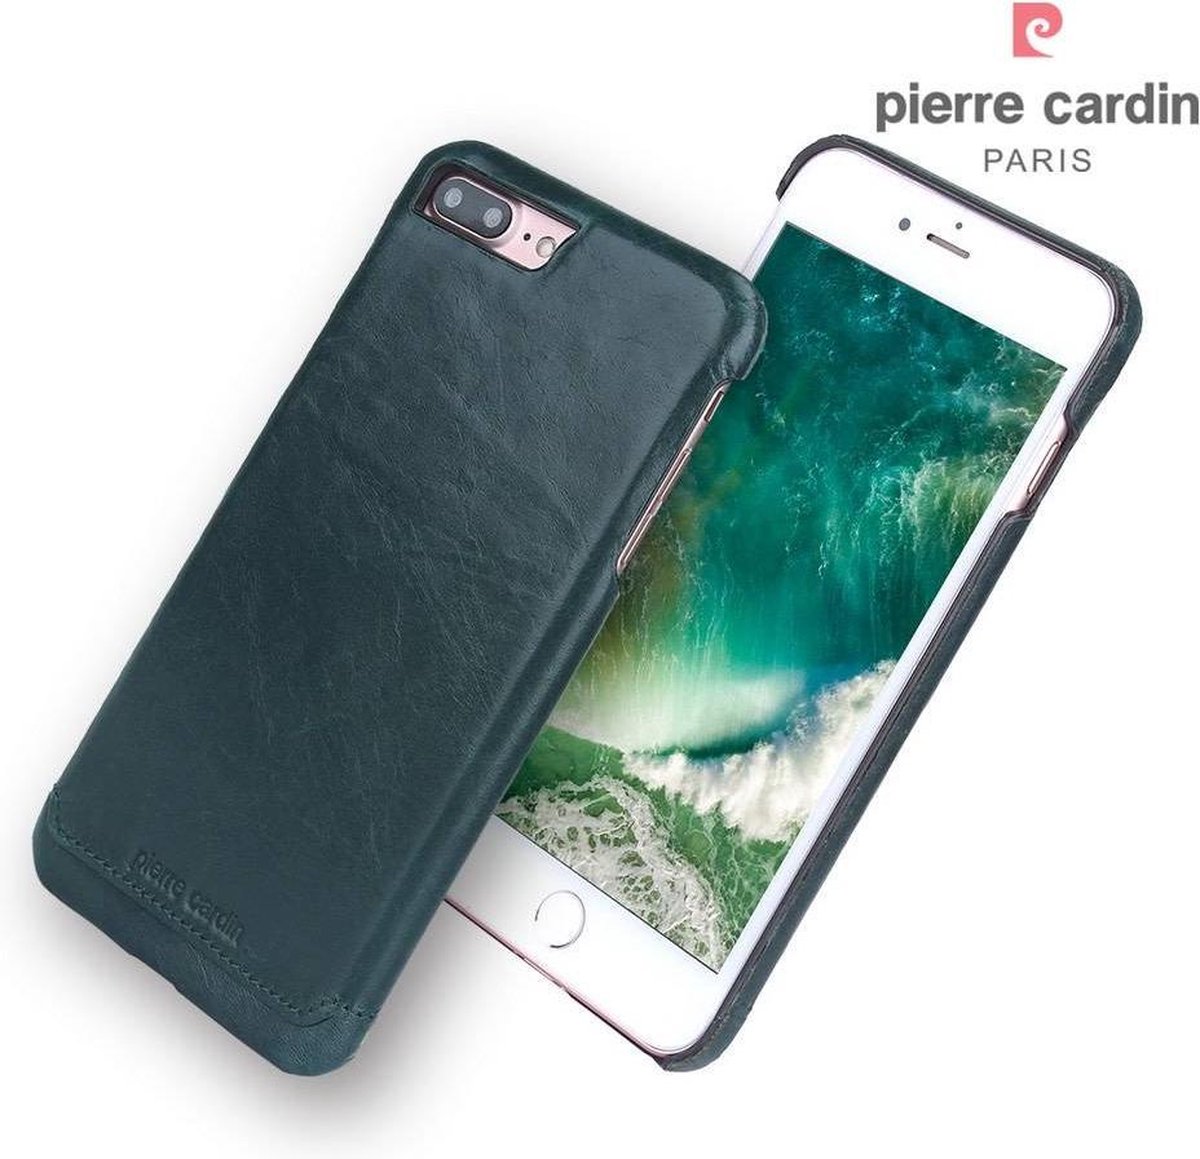 Groen hoesje van Pierre Cardin - Backcover - Stijlvol - Leer - iPhone 7-8 Plus - Luxe cover